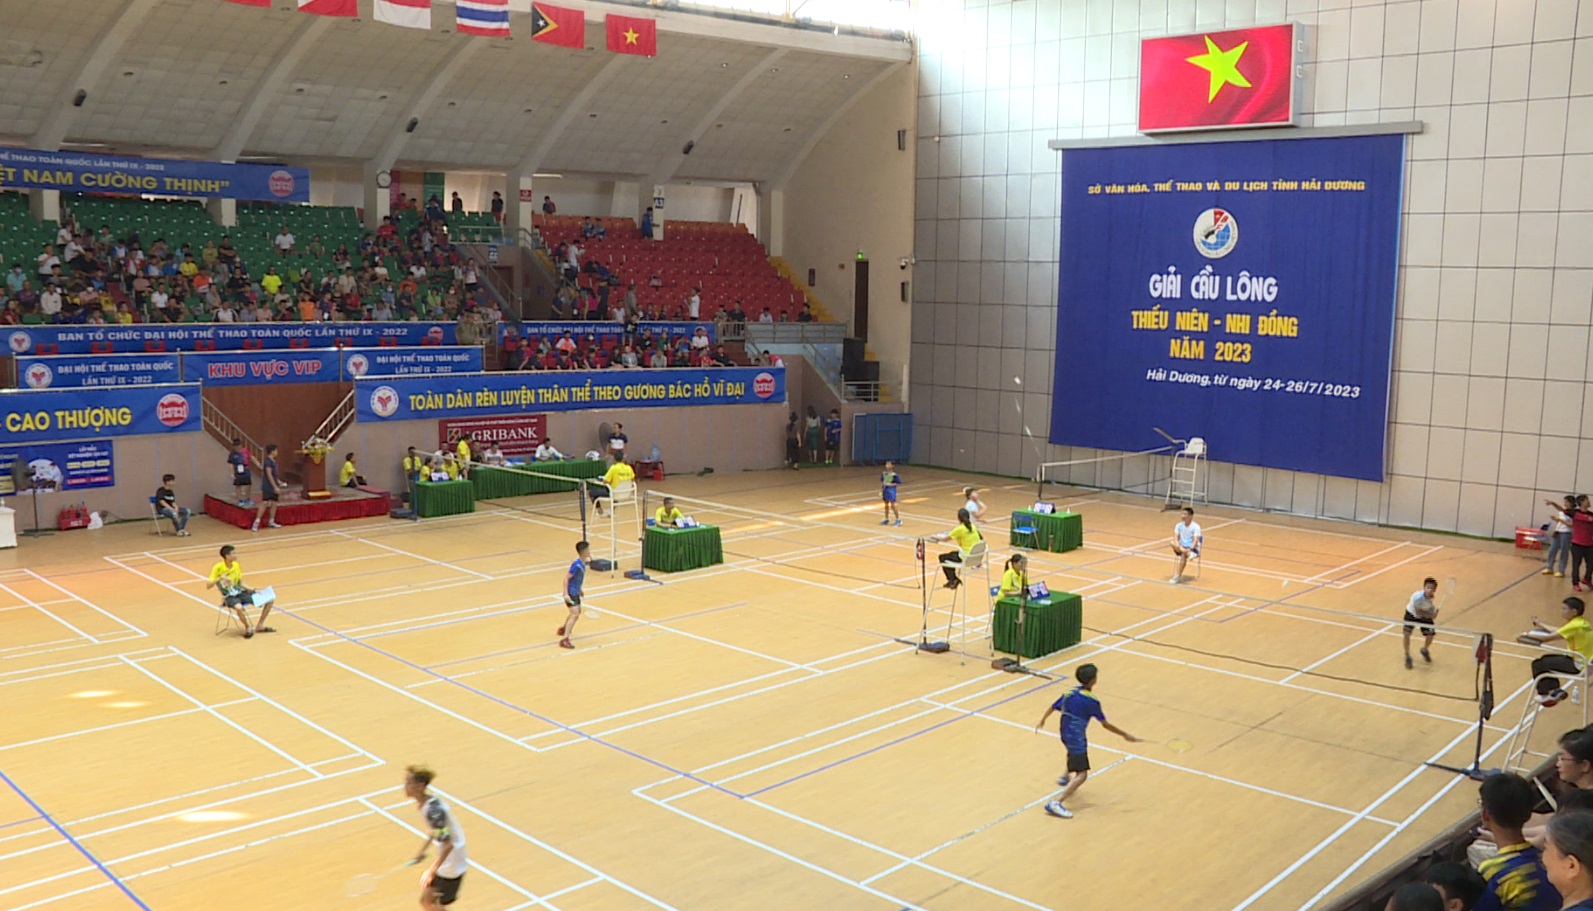 Giải Cầu lông Thiếu niên - Nhi đồng tỉnh Hải Dương năm 2023